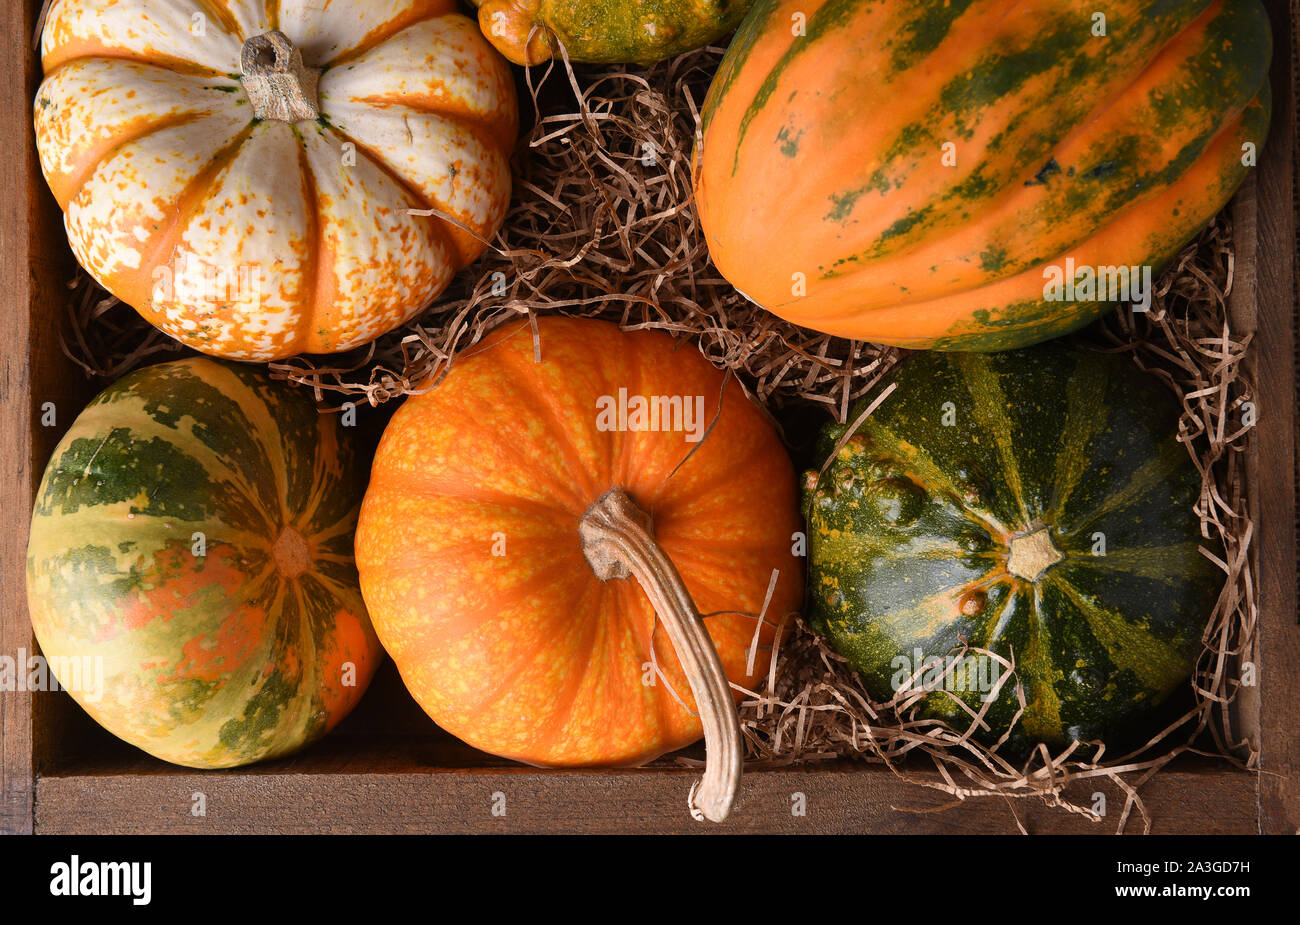 Ángulo alto closeup shot de un grupo de calabazas de otoño, squash y calabazas en una caja de madera.. Foto de stock